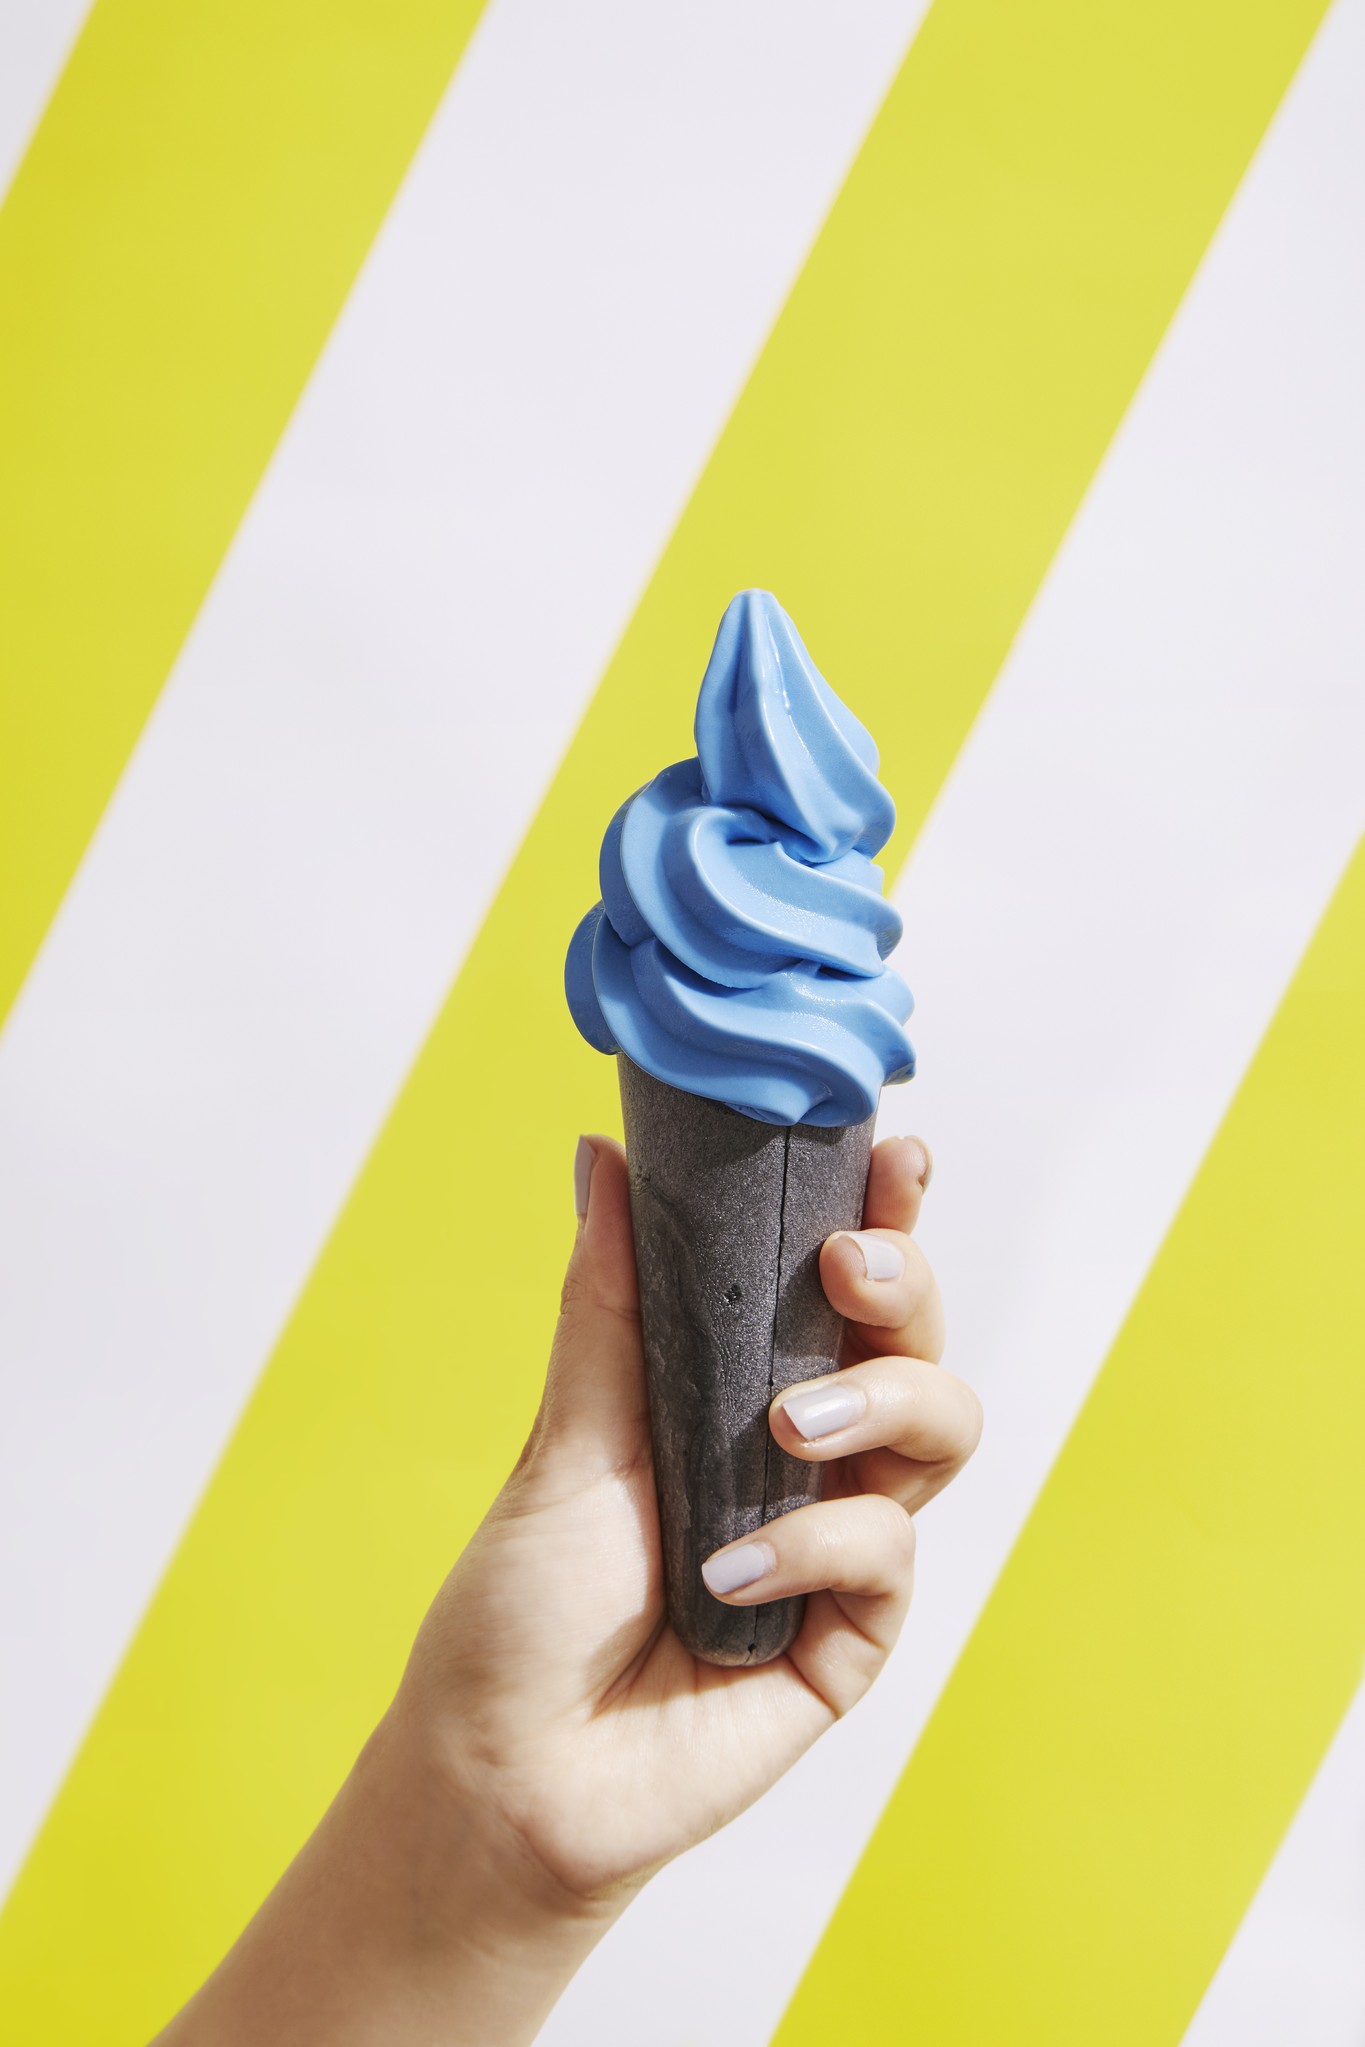 最新テクノロジーでつくるヴィーガンアイスを提供するアイスショップ Super Ice Creameryから 真っ青な生ヴィーガンソフトクリーム が7月3日 水 ソフトクリームの日に新登場 株式会社 Think Green Produceのプレスリリース